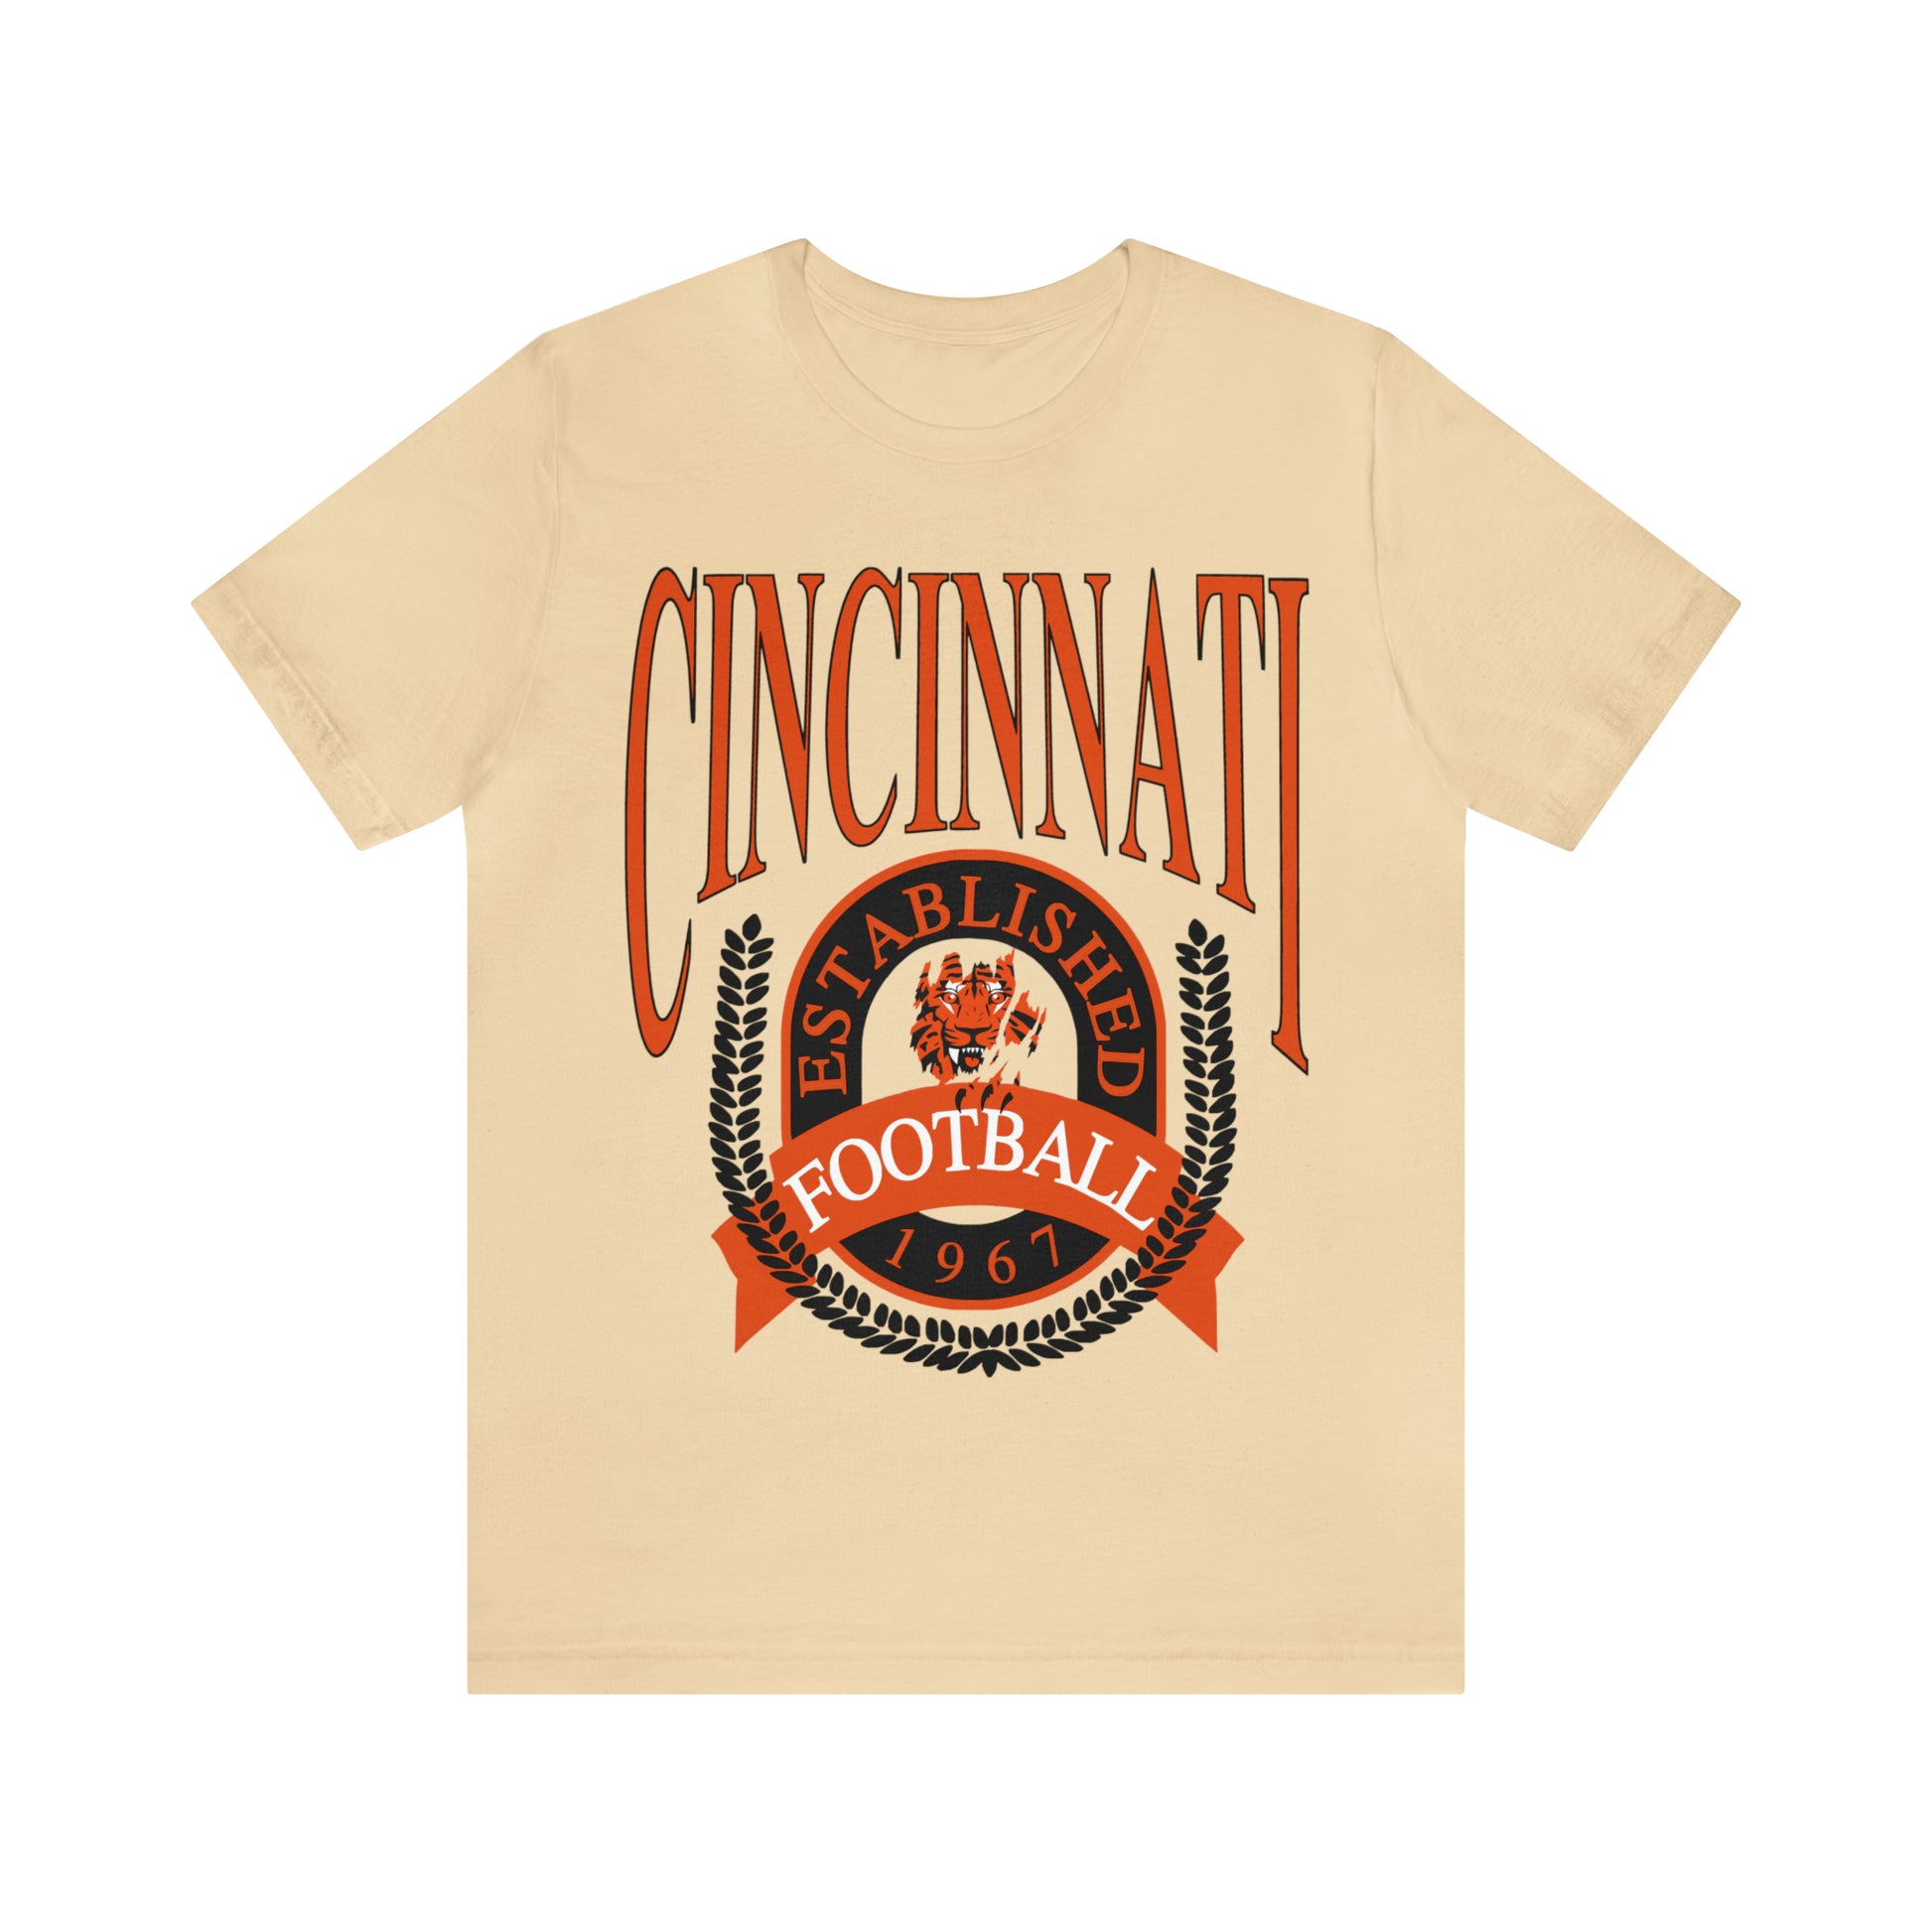 Cincinnati Bengals T-Shirt - Vintage Short Sleeve Bengals Tee - NFL Football Oversized Unisex, Men's & Women's Apparel - Design 1 Tan Beige Cream